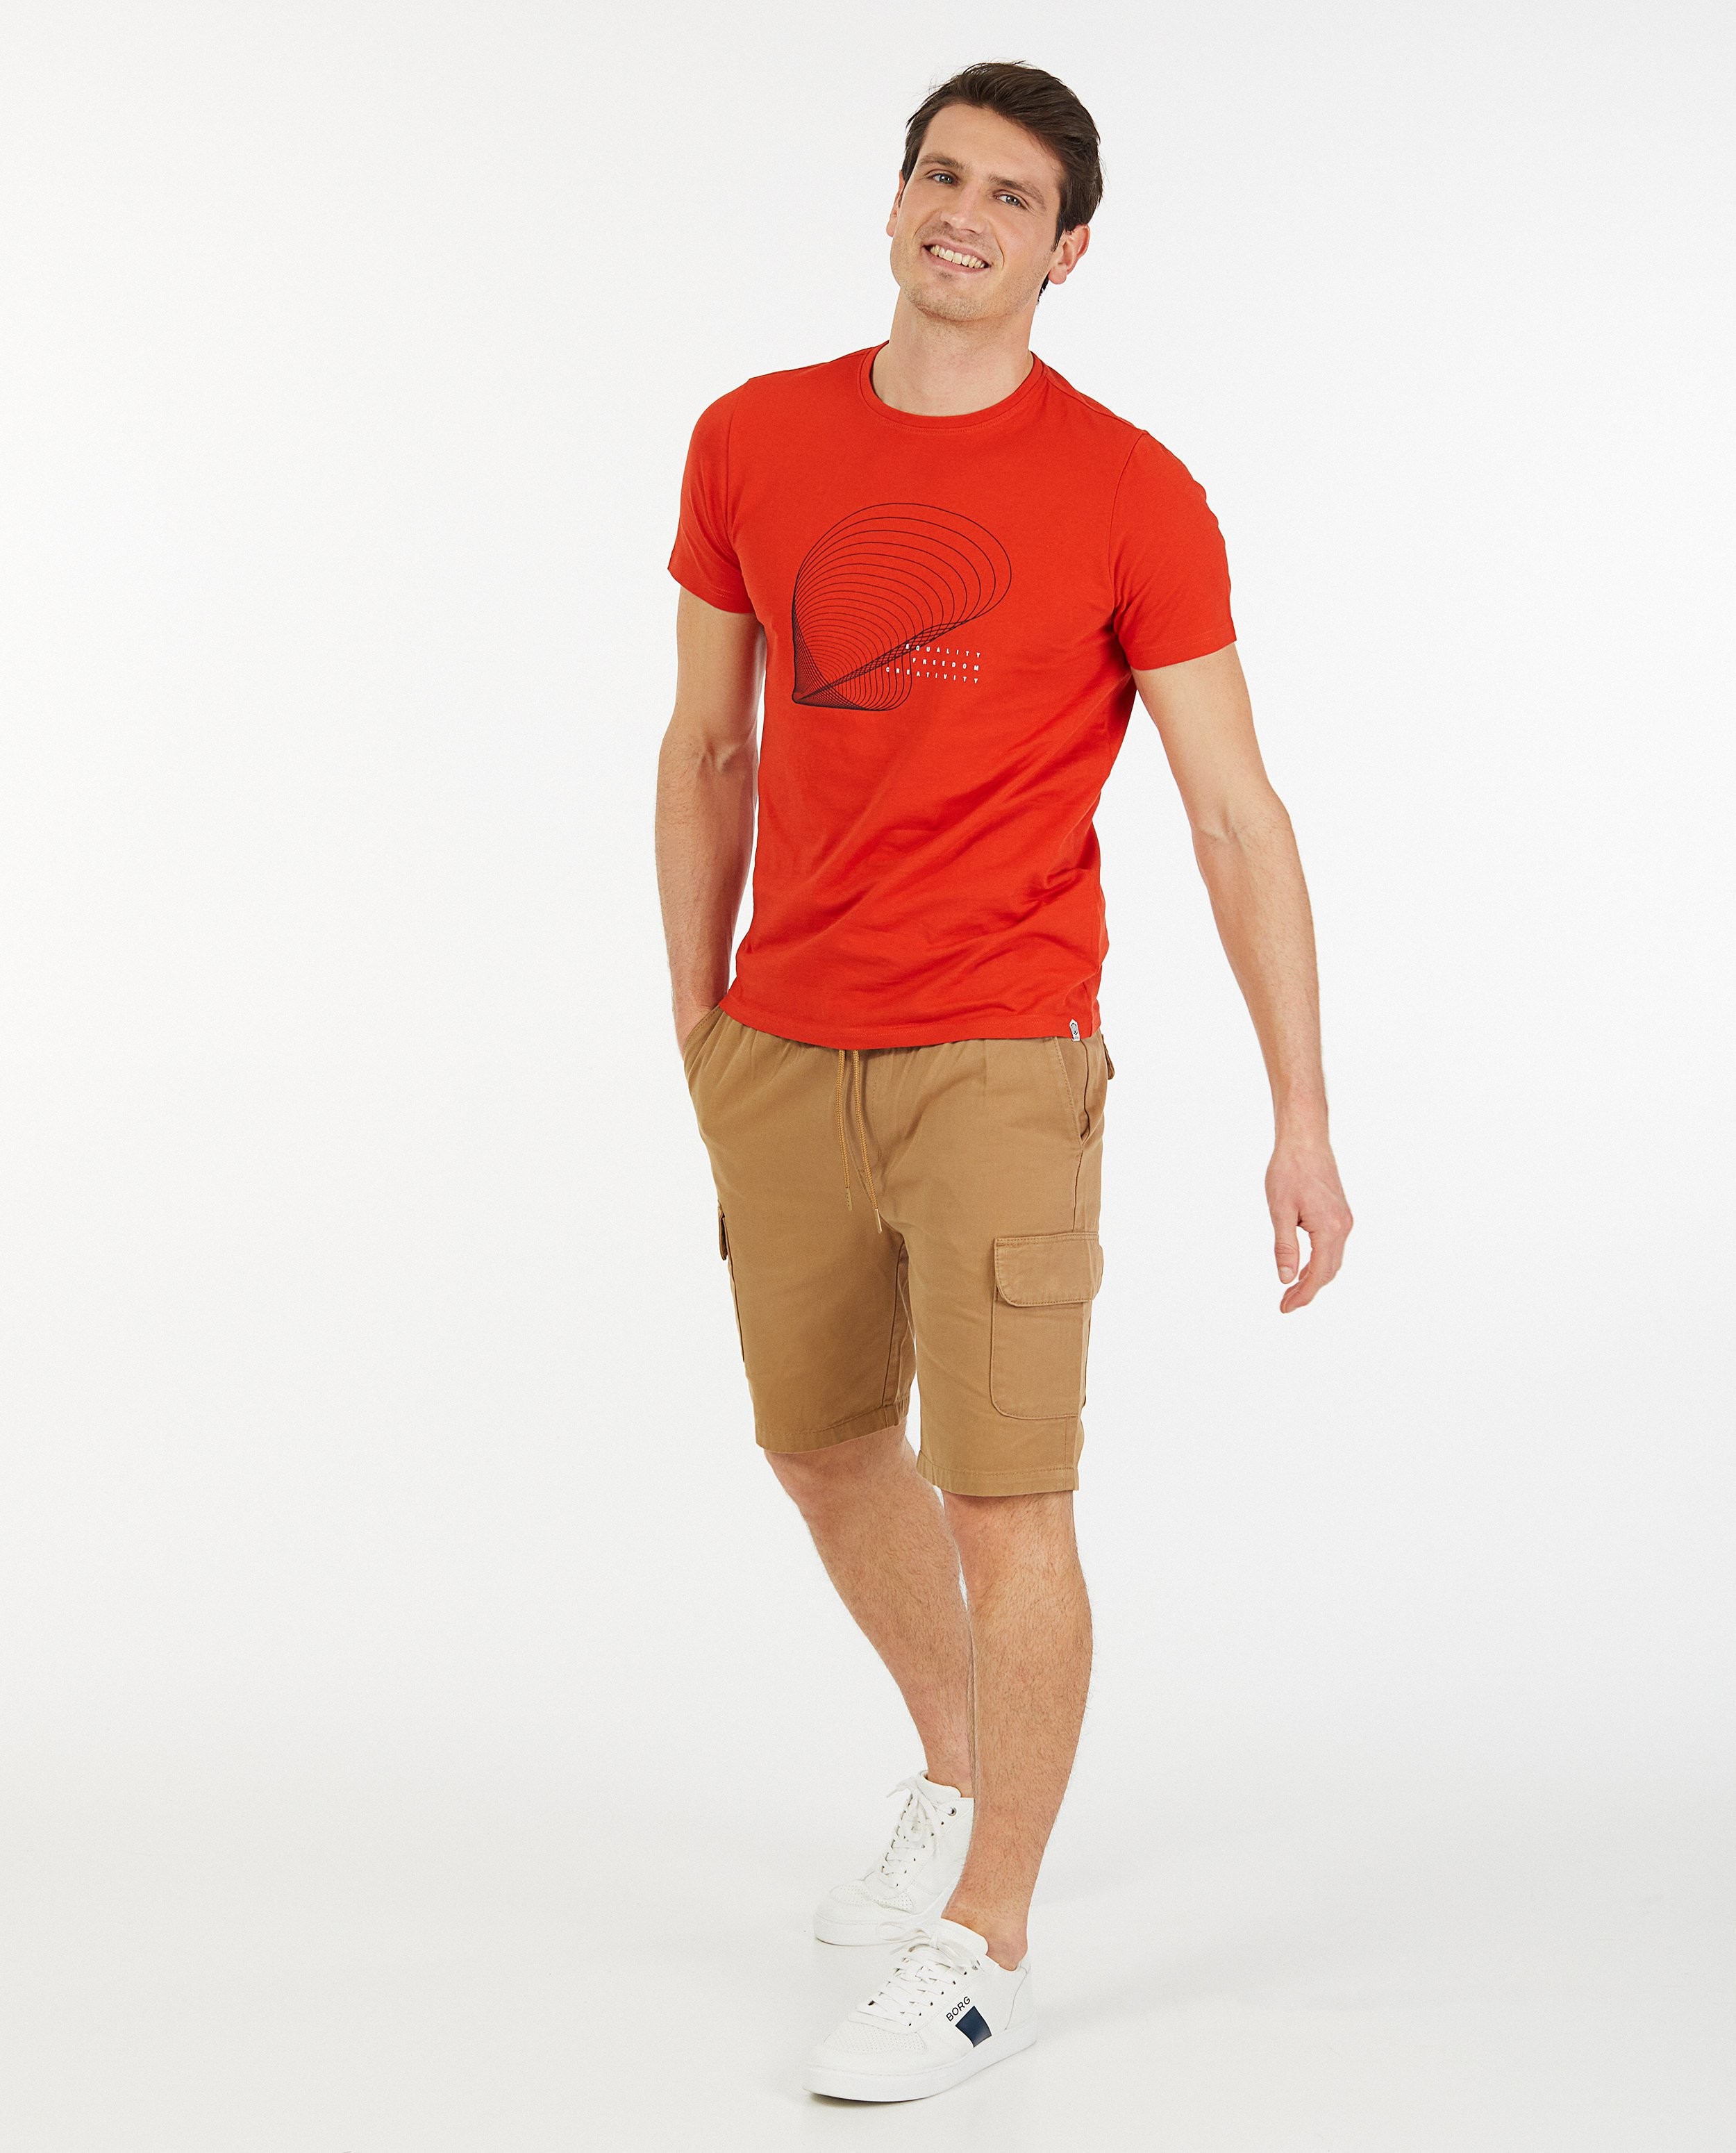 Biokatoenen T-shirt met print - in rood - Quarterback